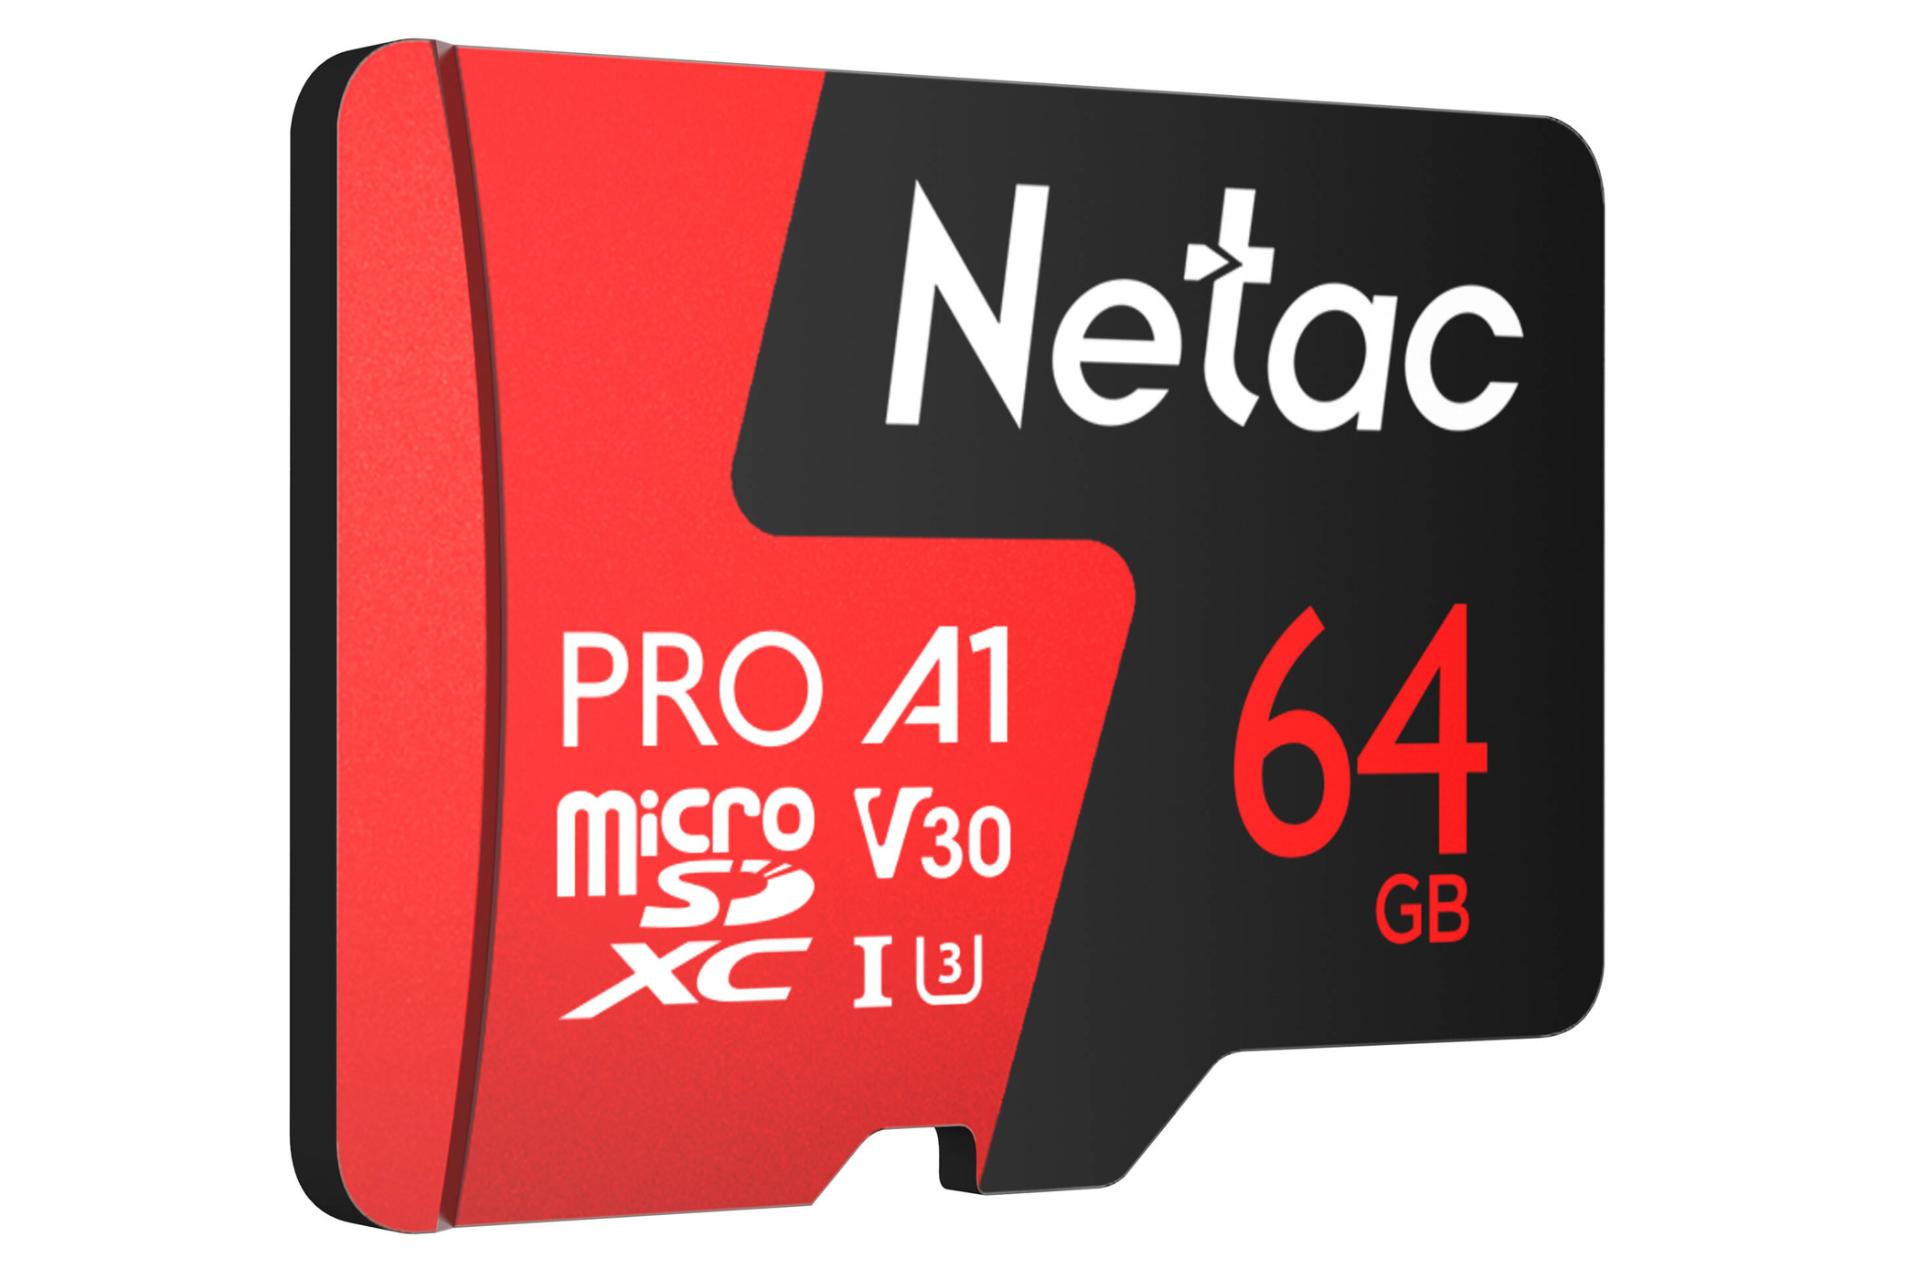 نمای چپ کارت حافظه نتاک microSDXC ظرفیت 64 گیگابایت مدل P500 Extreme Pro V30 A1